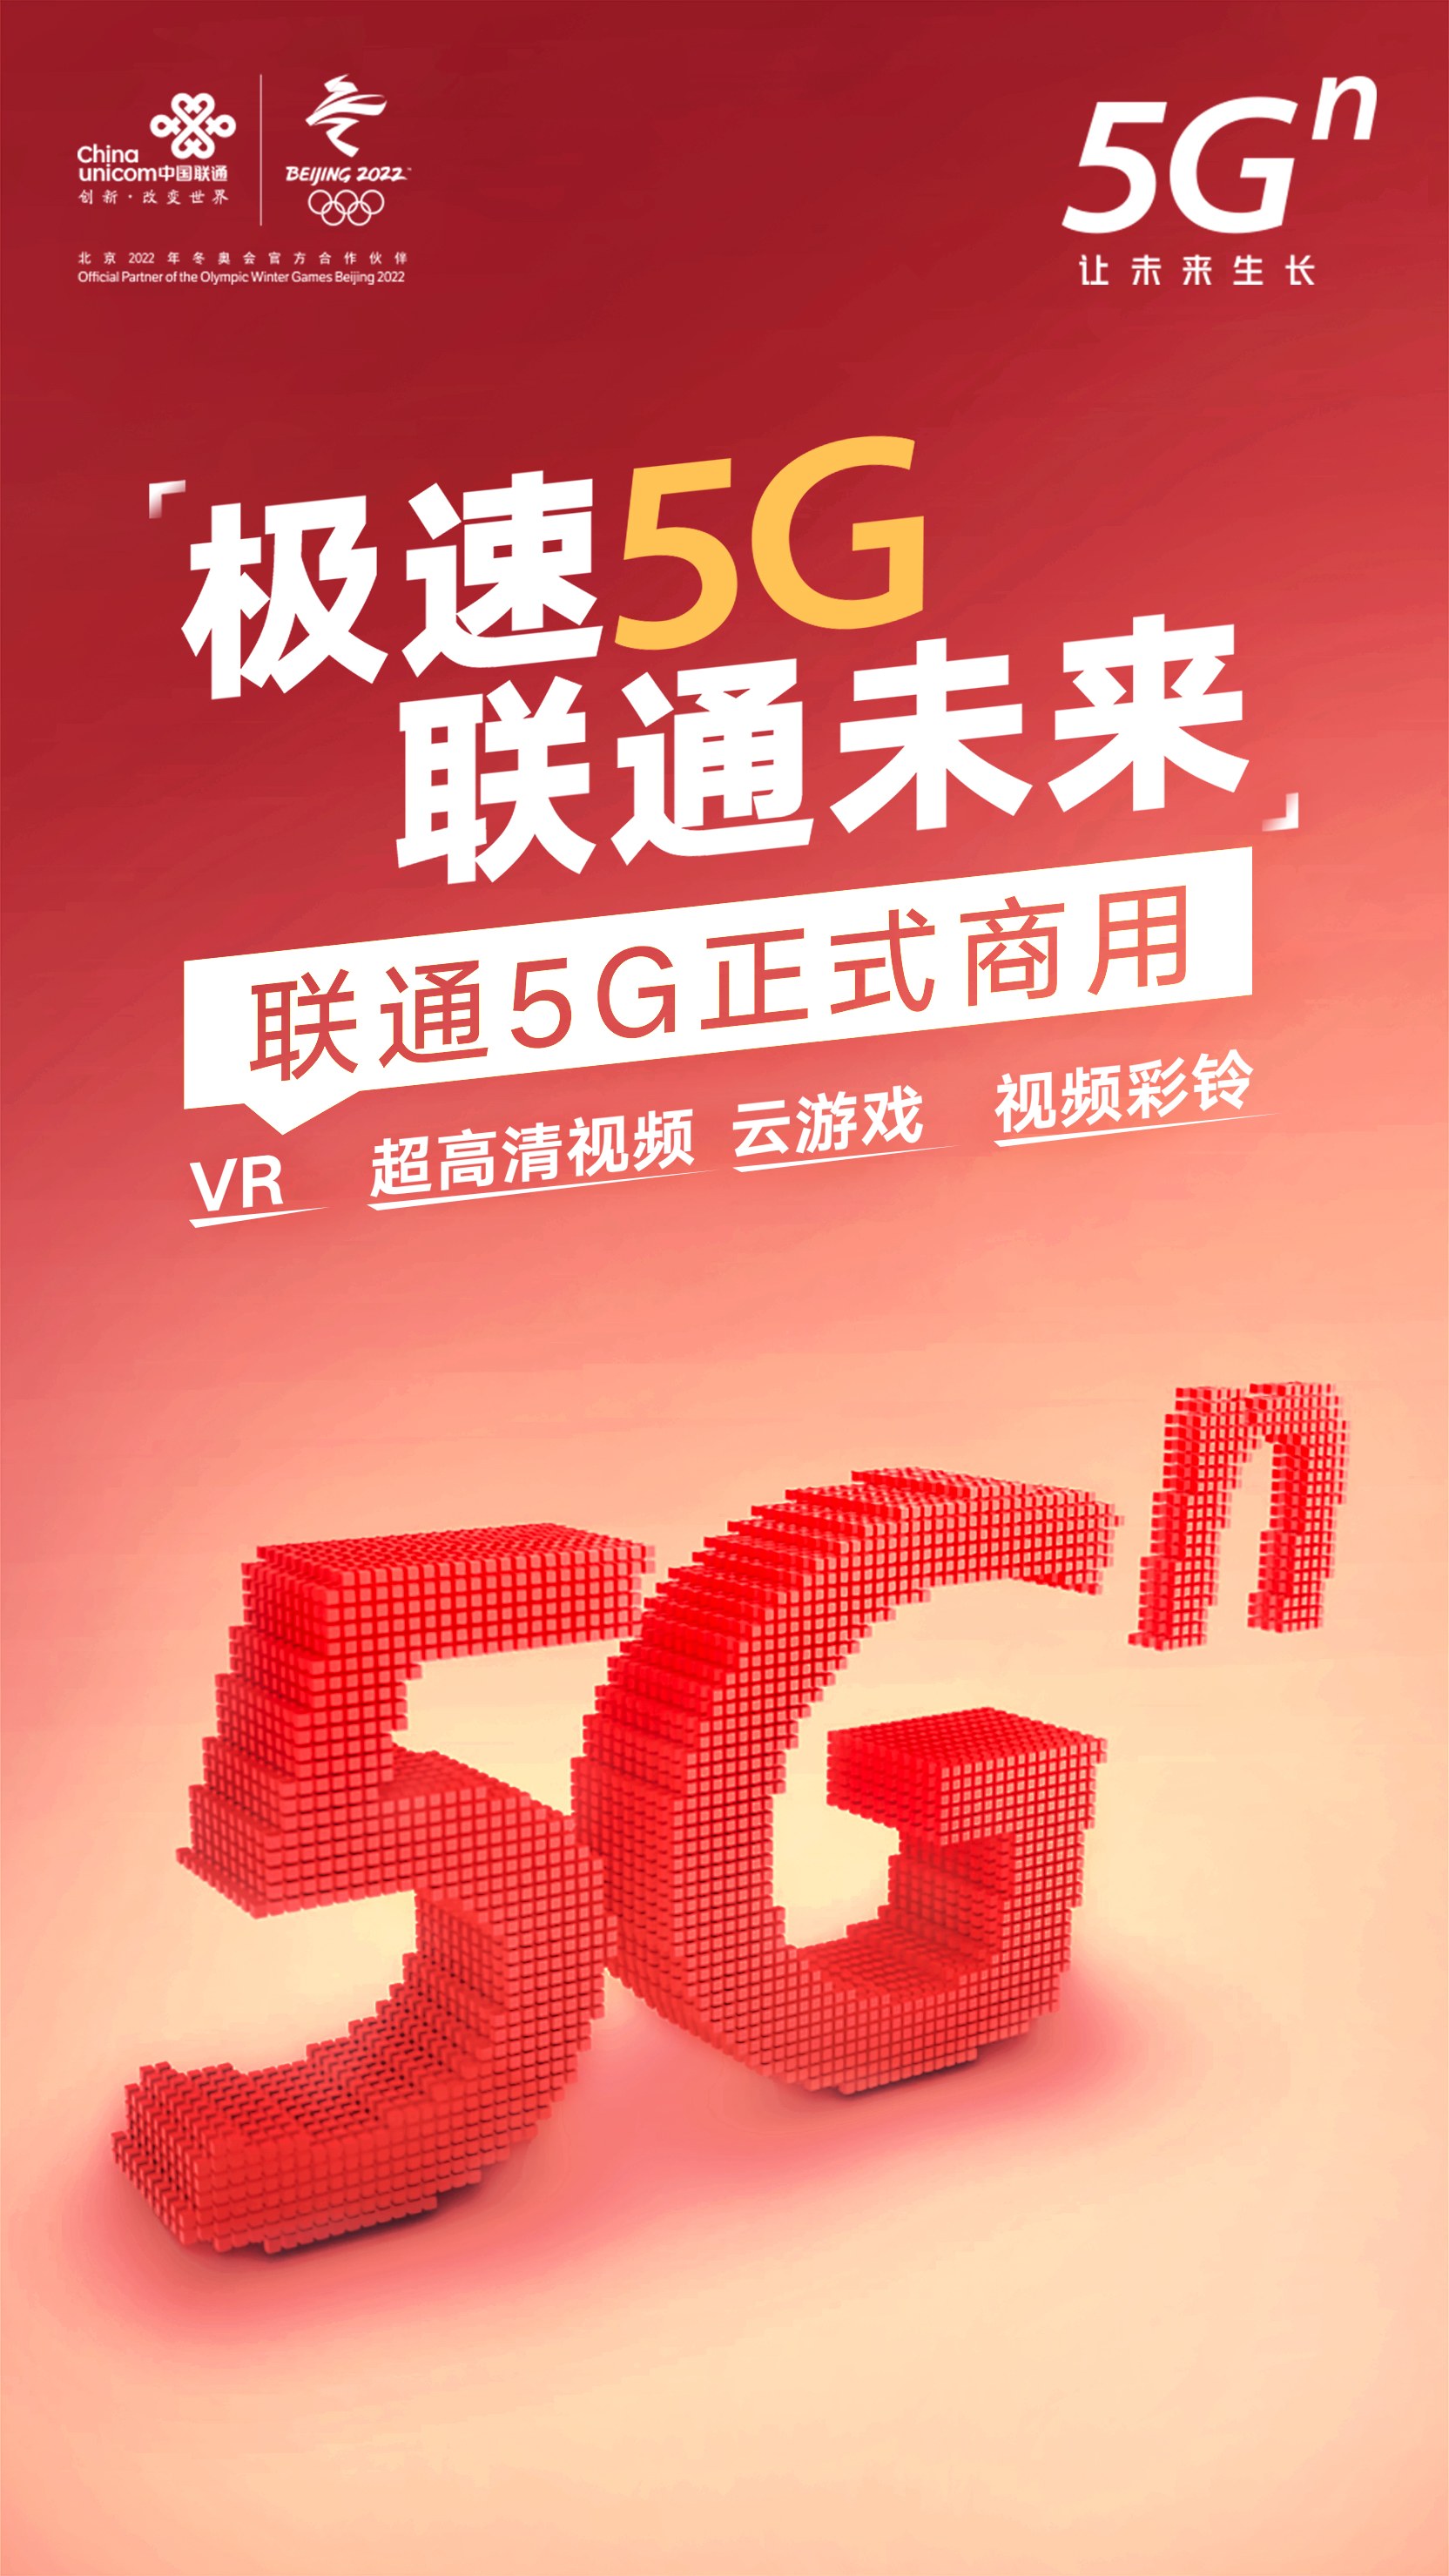 5G 技术普及面临挑战，上海联通引领通信行业技术更新换代  第3张